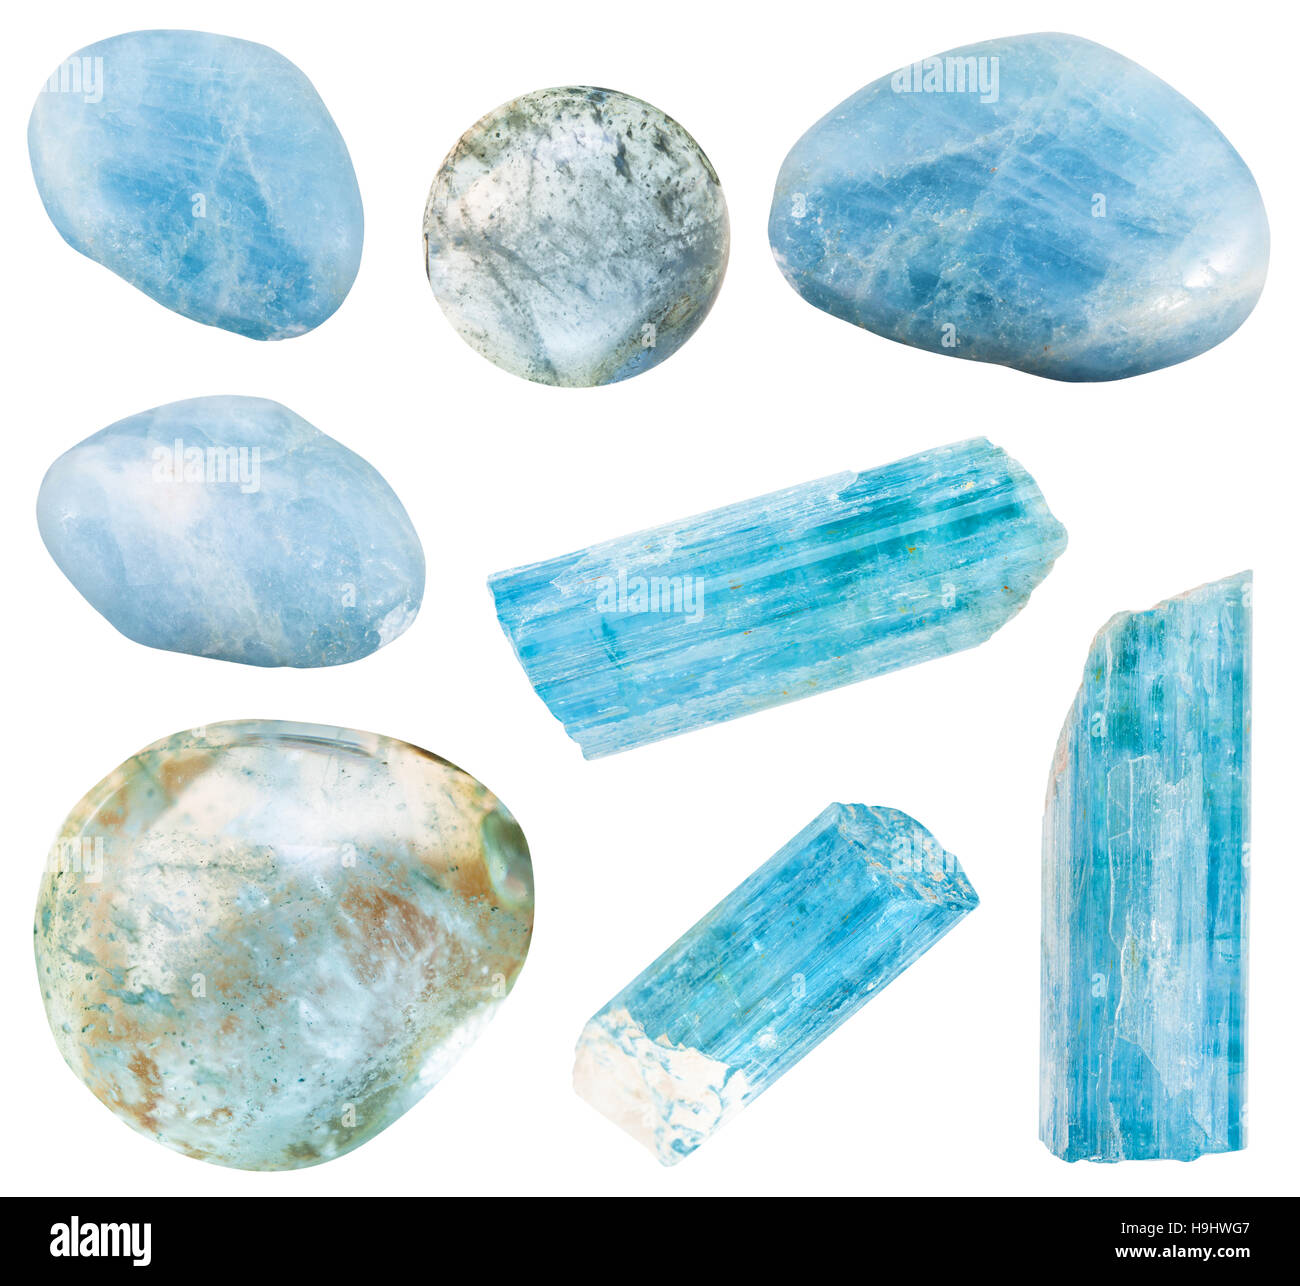 Série de l'aigue-marine (béryl bleu) cristaux minéraux et pierres précieuses polies isolé sur fond blanc Banque D'Images